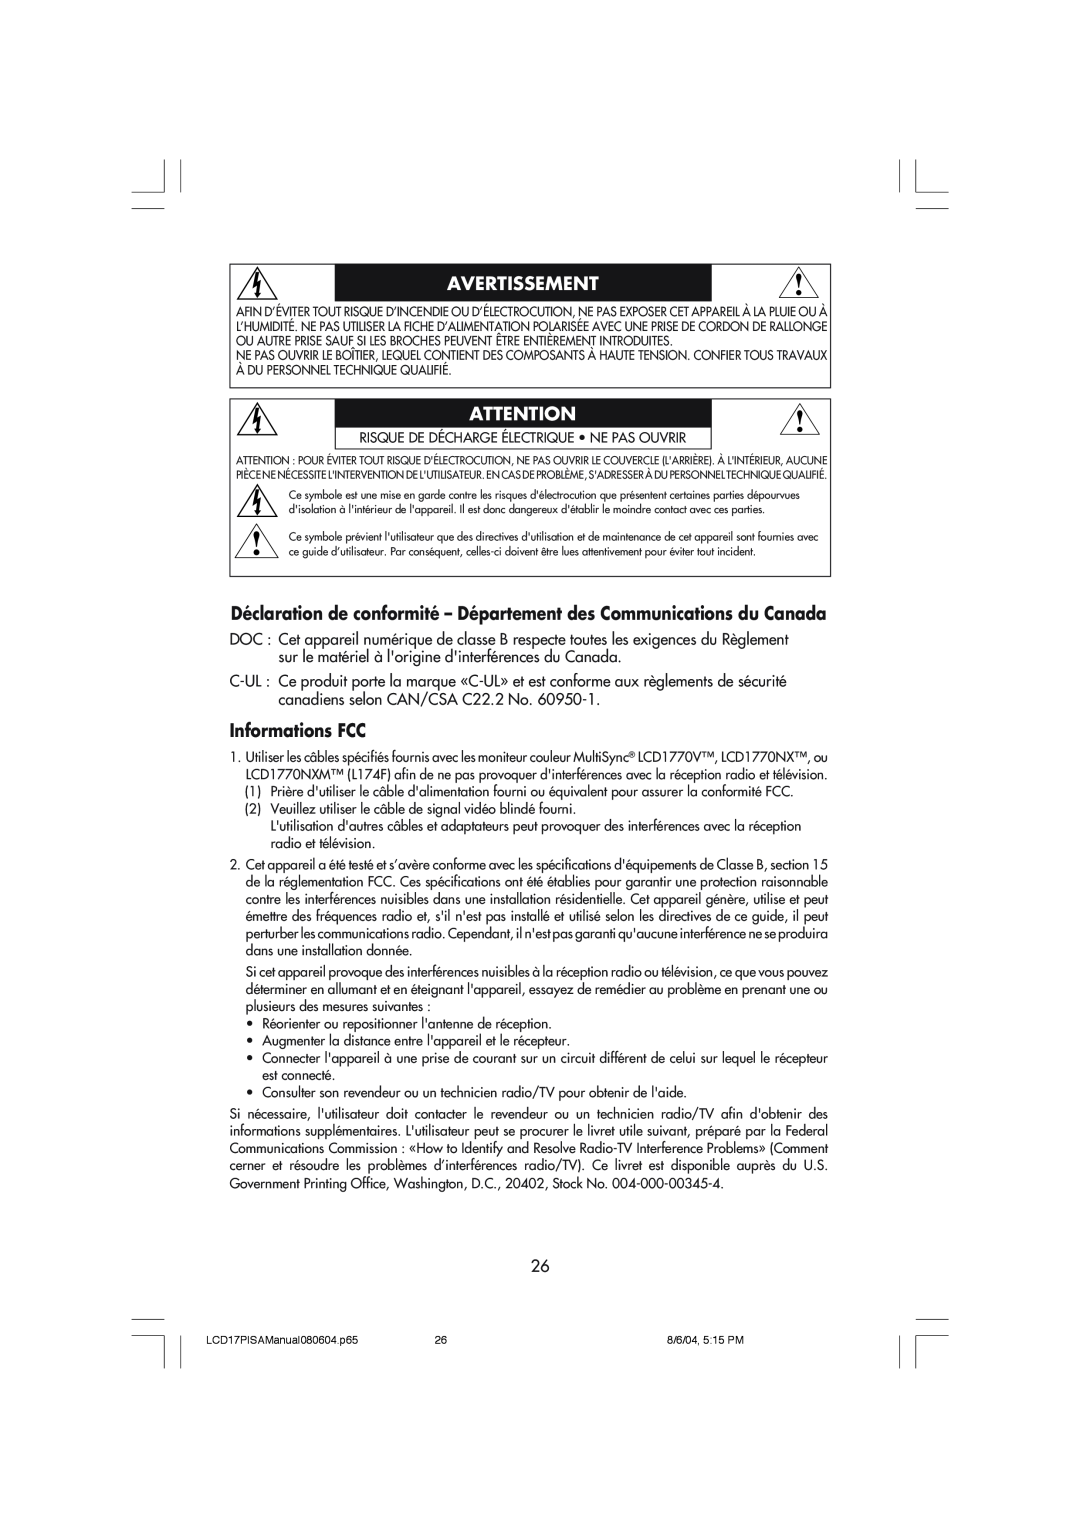 NEC LCD1770V Déclaration de conformité - Département des Communications du Canada, Informations FCC, Avertissement 